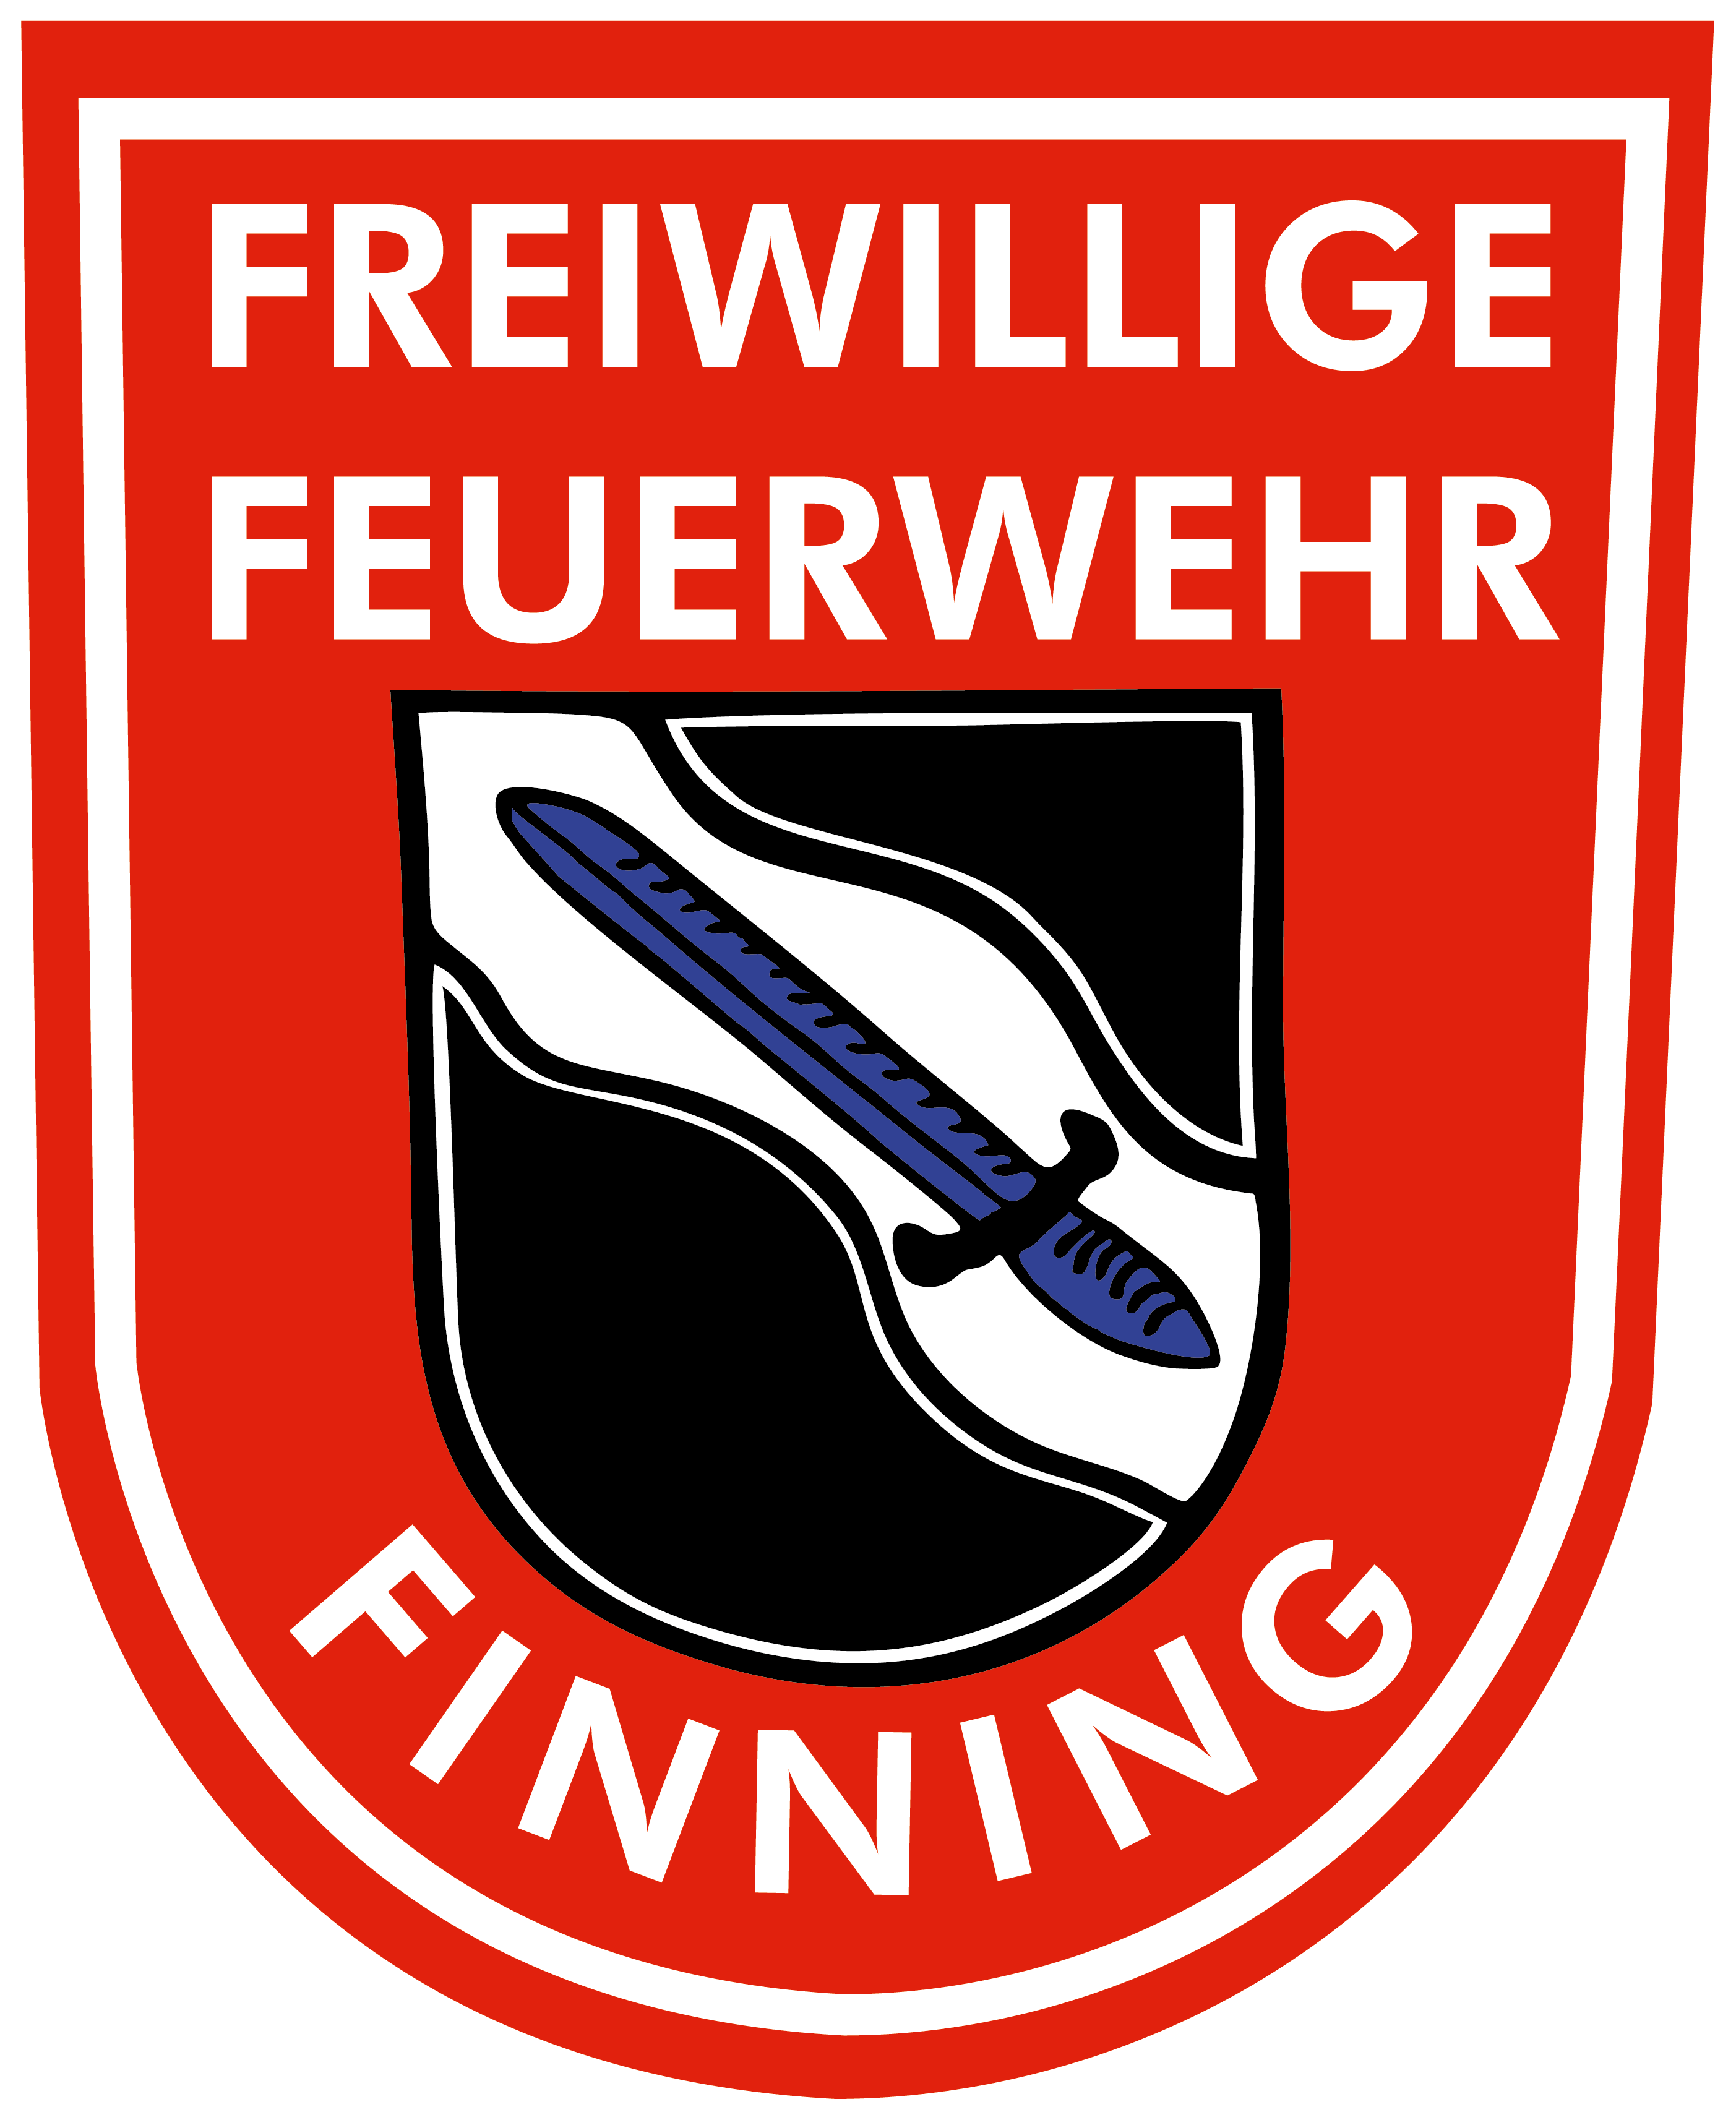 Feuerwehrverein Finning e.V.